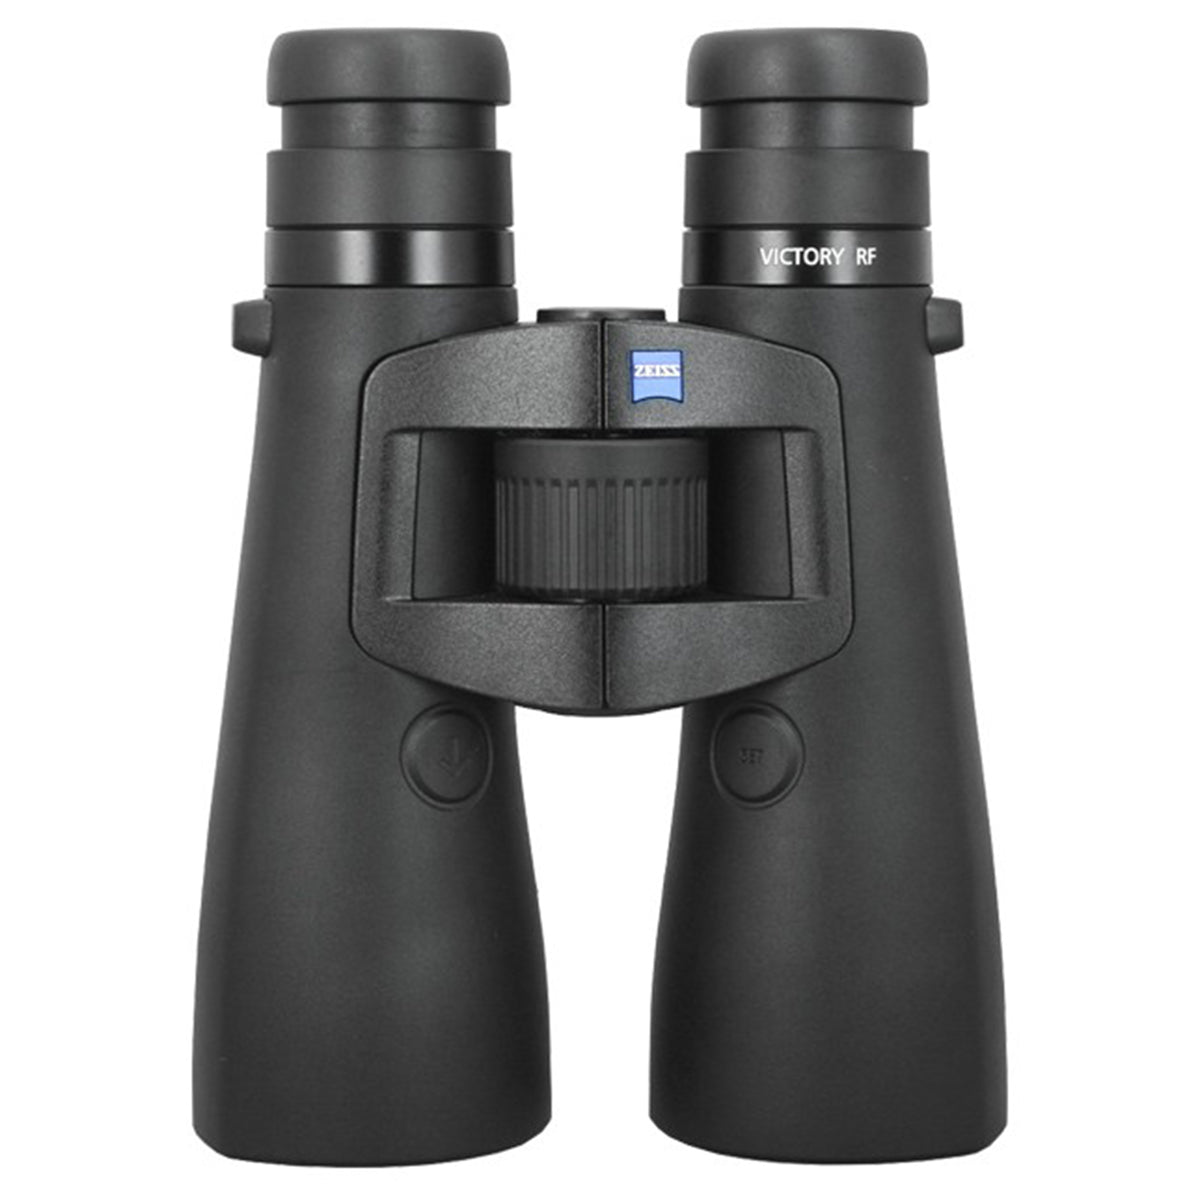 Zeiss 10x54 Victory Rangefinding Binocular in Zeiss 10x54 Victory Rangefinding Binocular by Zeiss | Optics - goHUNT Shop by GOHUNT | Zeiss - GOHUNT Shop